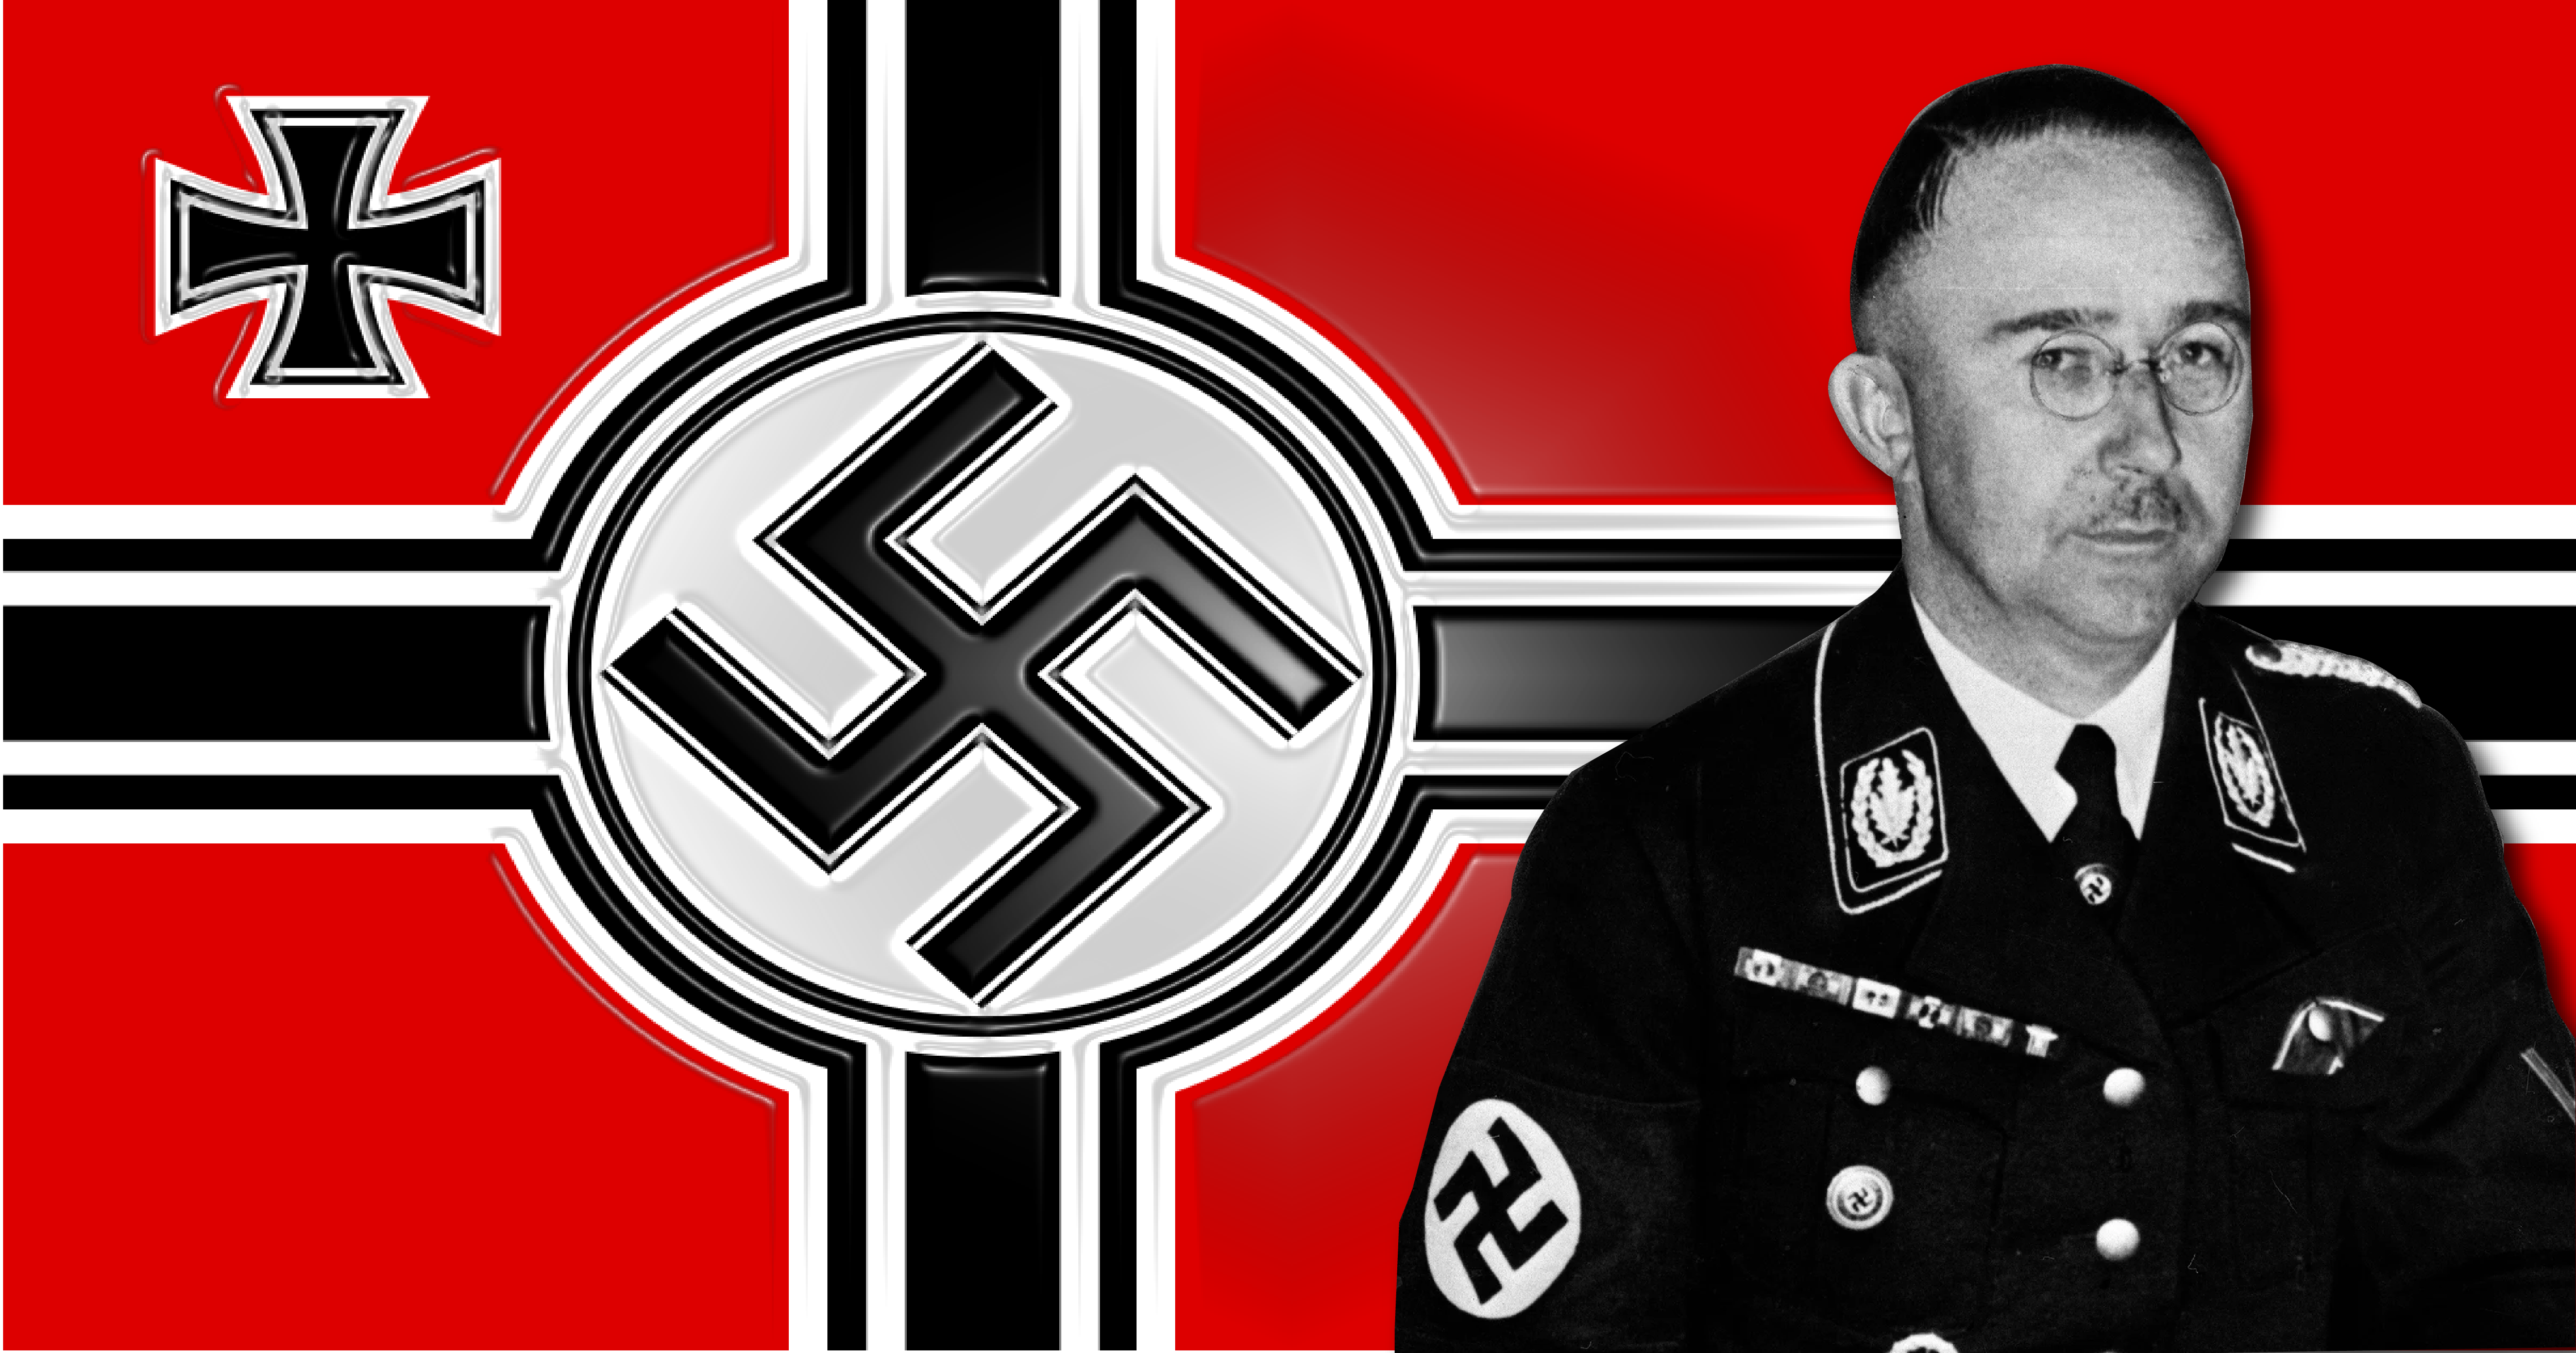 Heinrich Himmler - The Bored Veteran